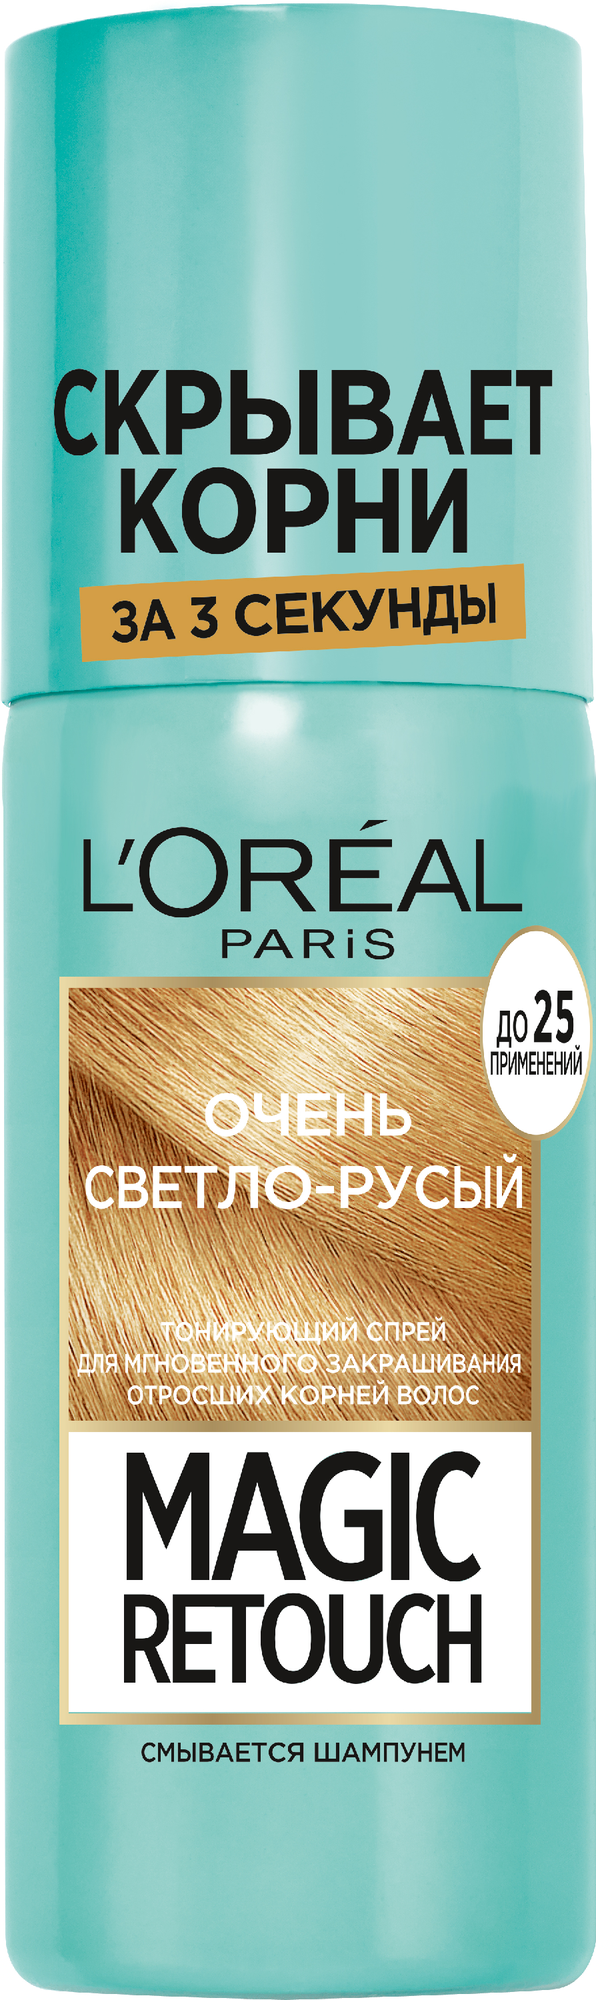 L'Oreal Paris Спрей Magic Retouch для мгновенного закрашивания отросших корней волос, очень светло-русый, 75 мл